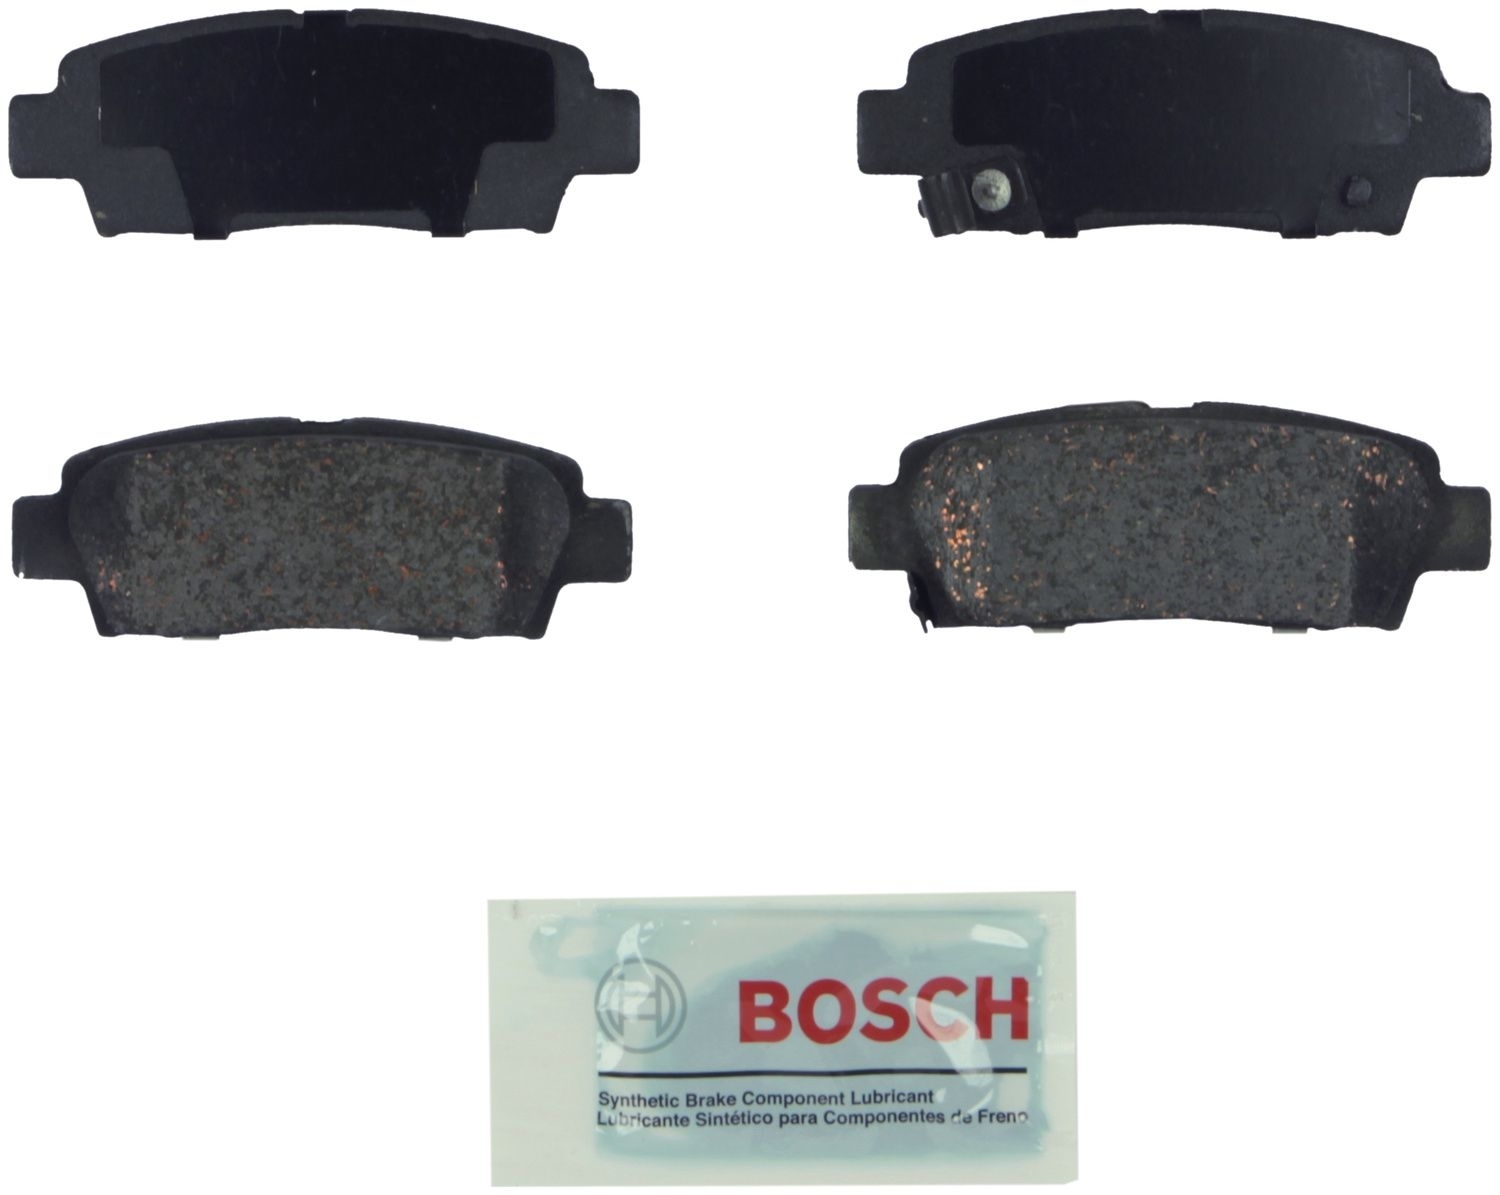 BOSCH BRAKE - Bosch Blue Ceramic Brake Pads - BQC BE672